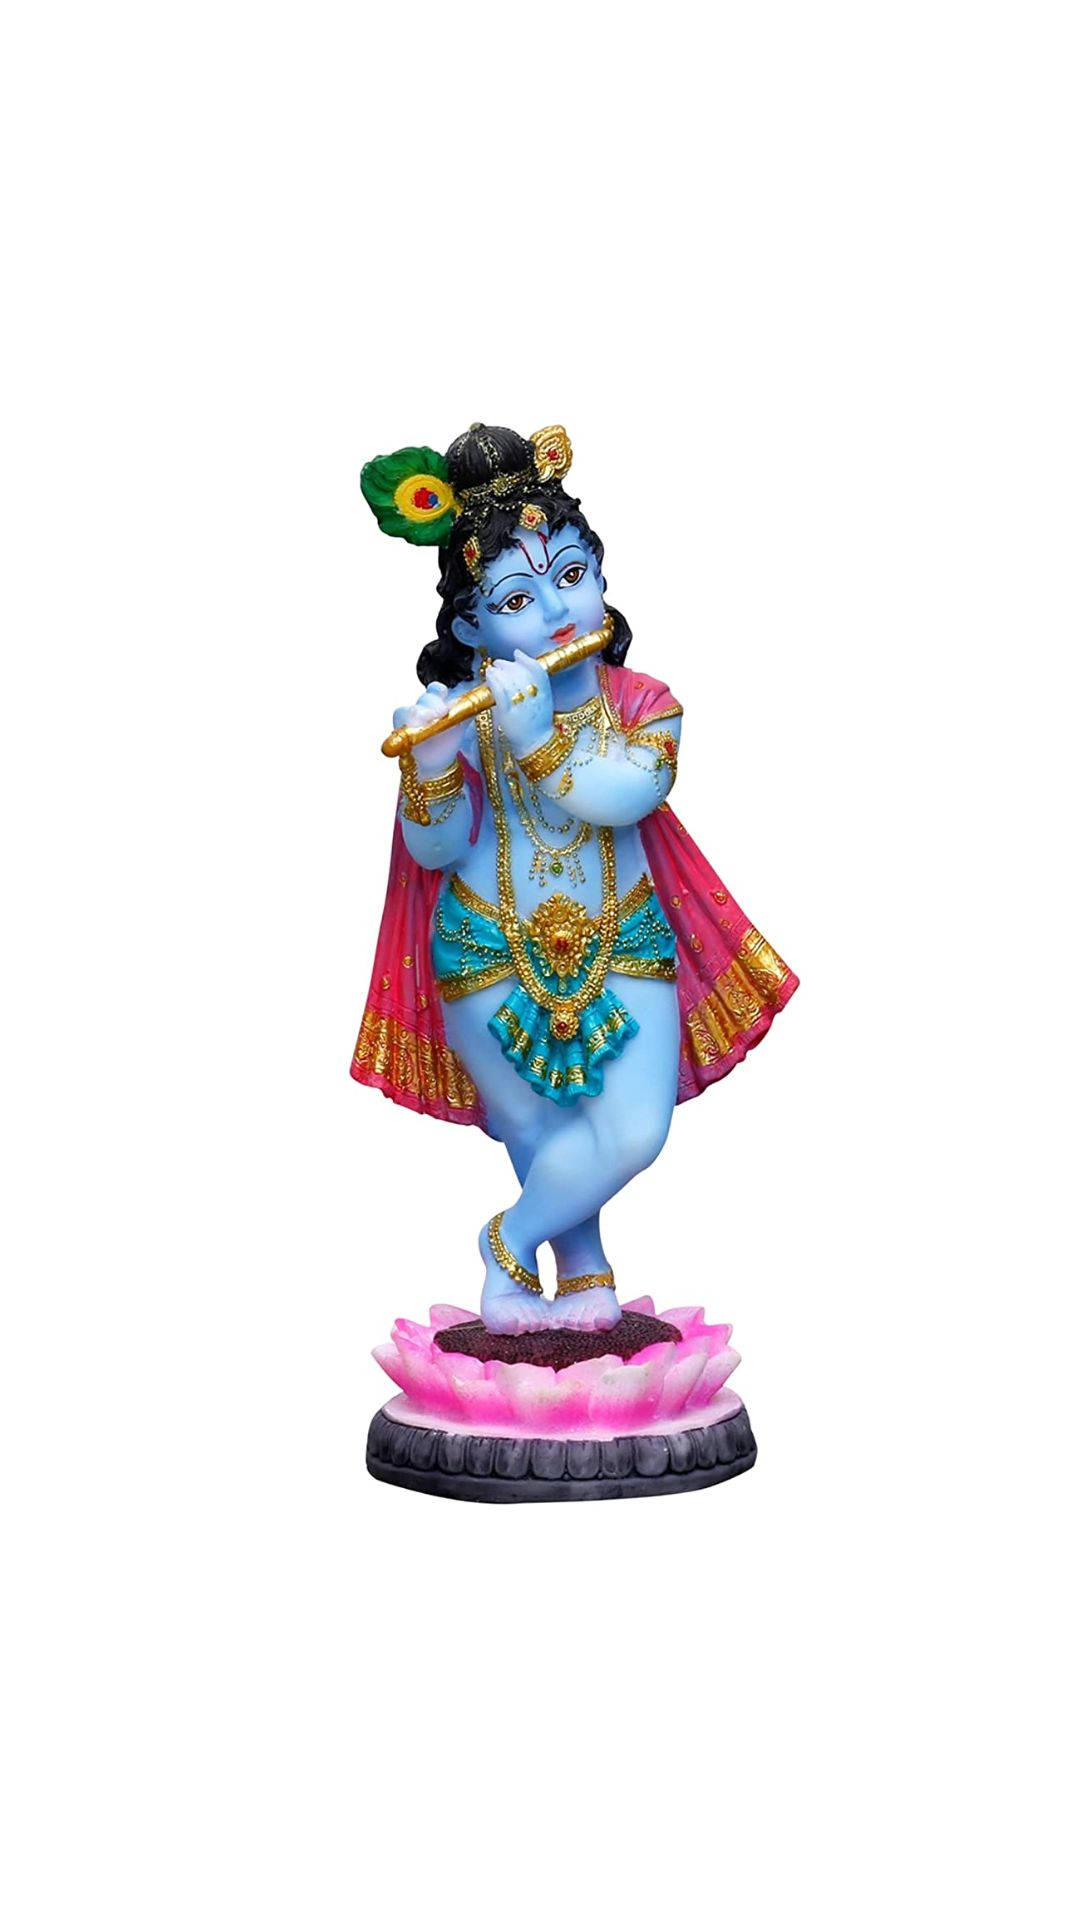 Cute Krishna Statue Background